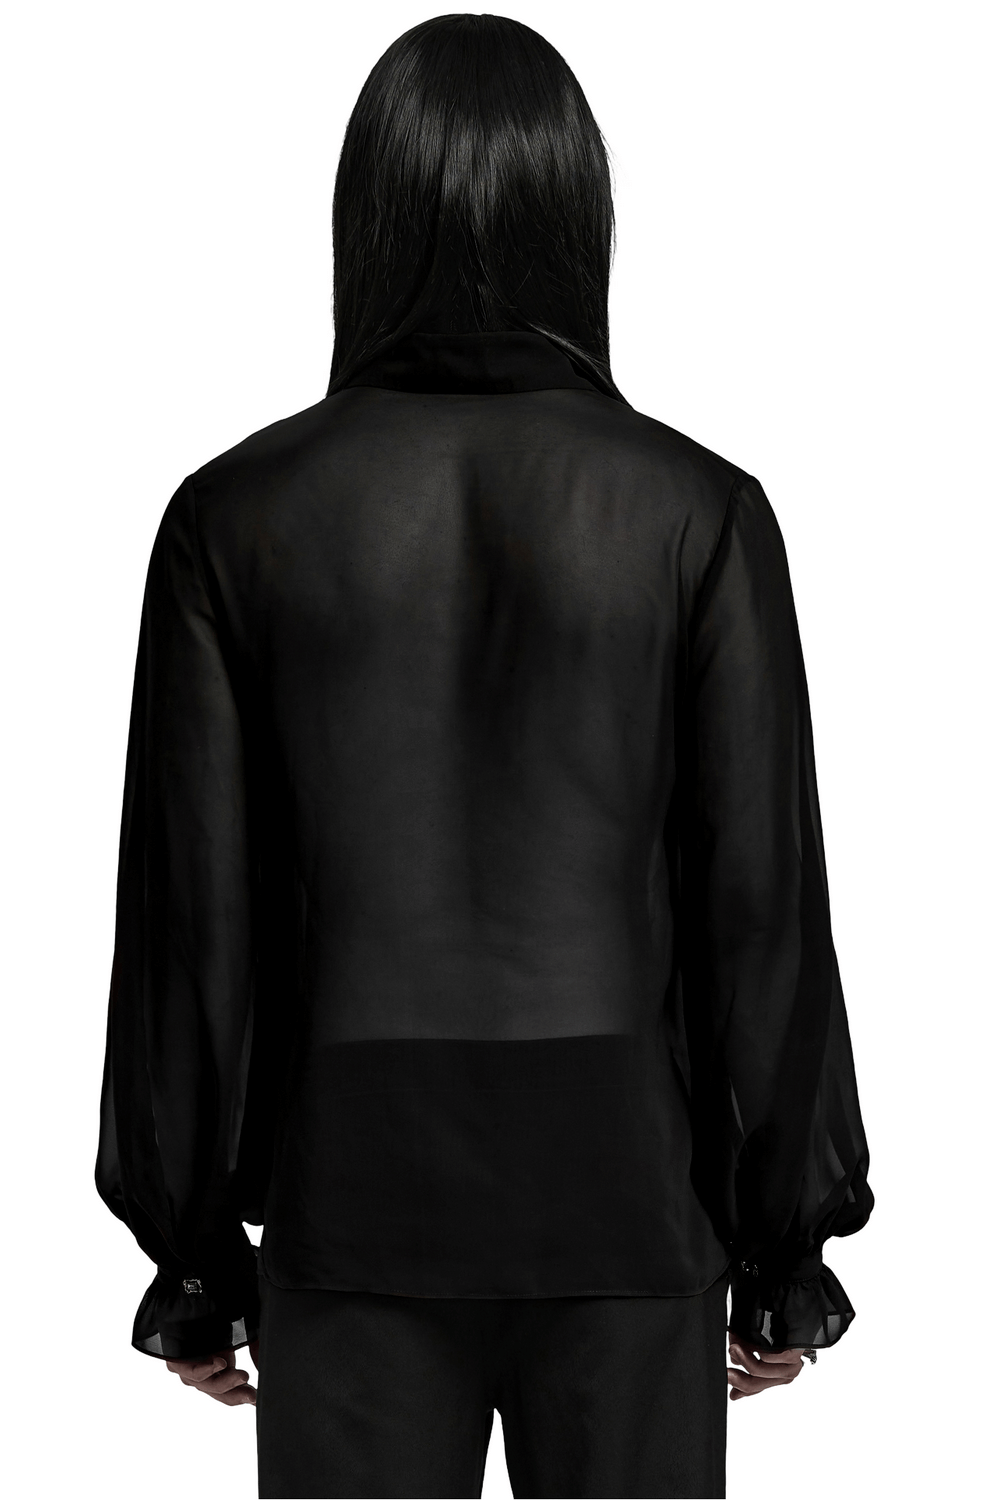 Camisa gótica para hombre: gasa transparente con cordones en la parte delantera